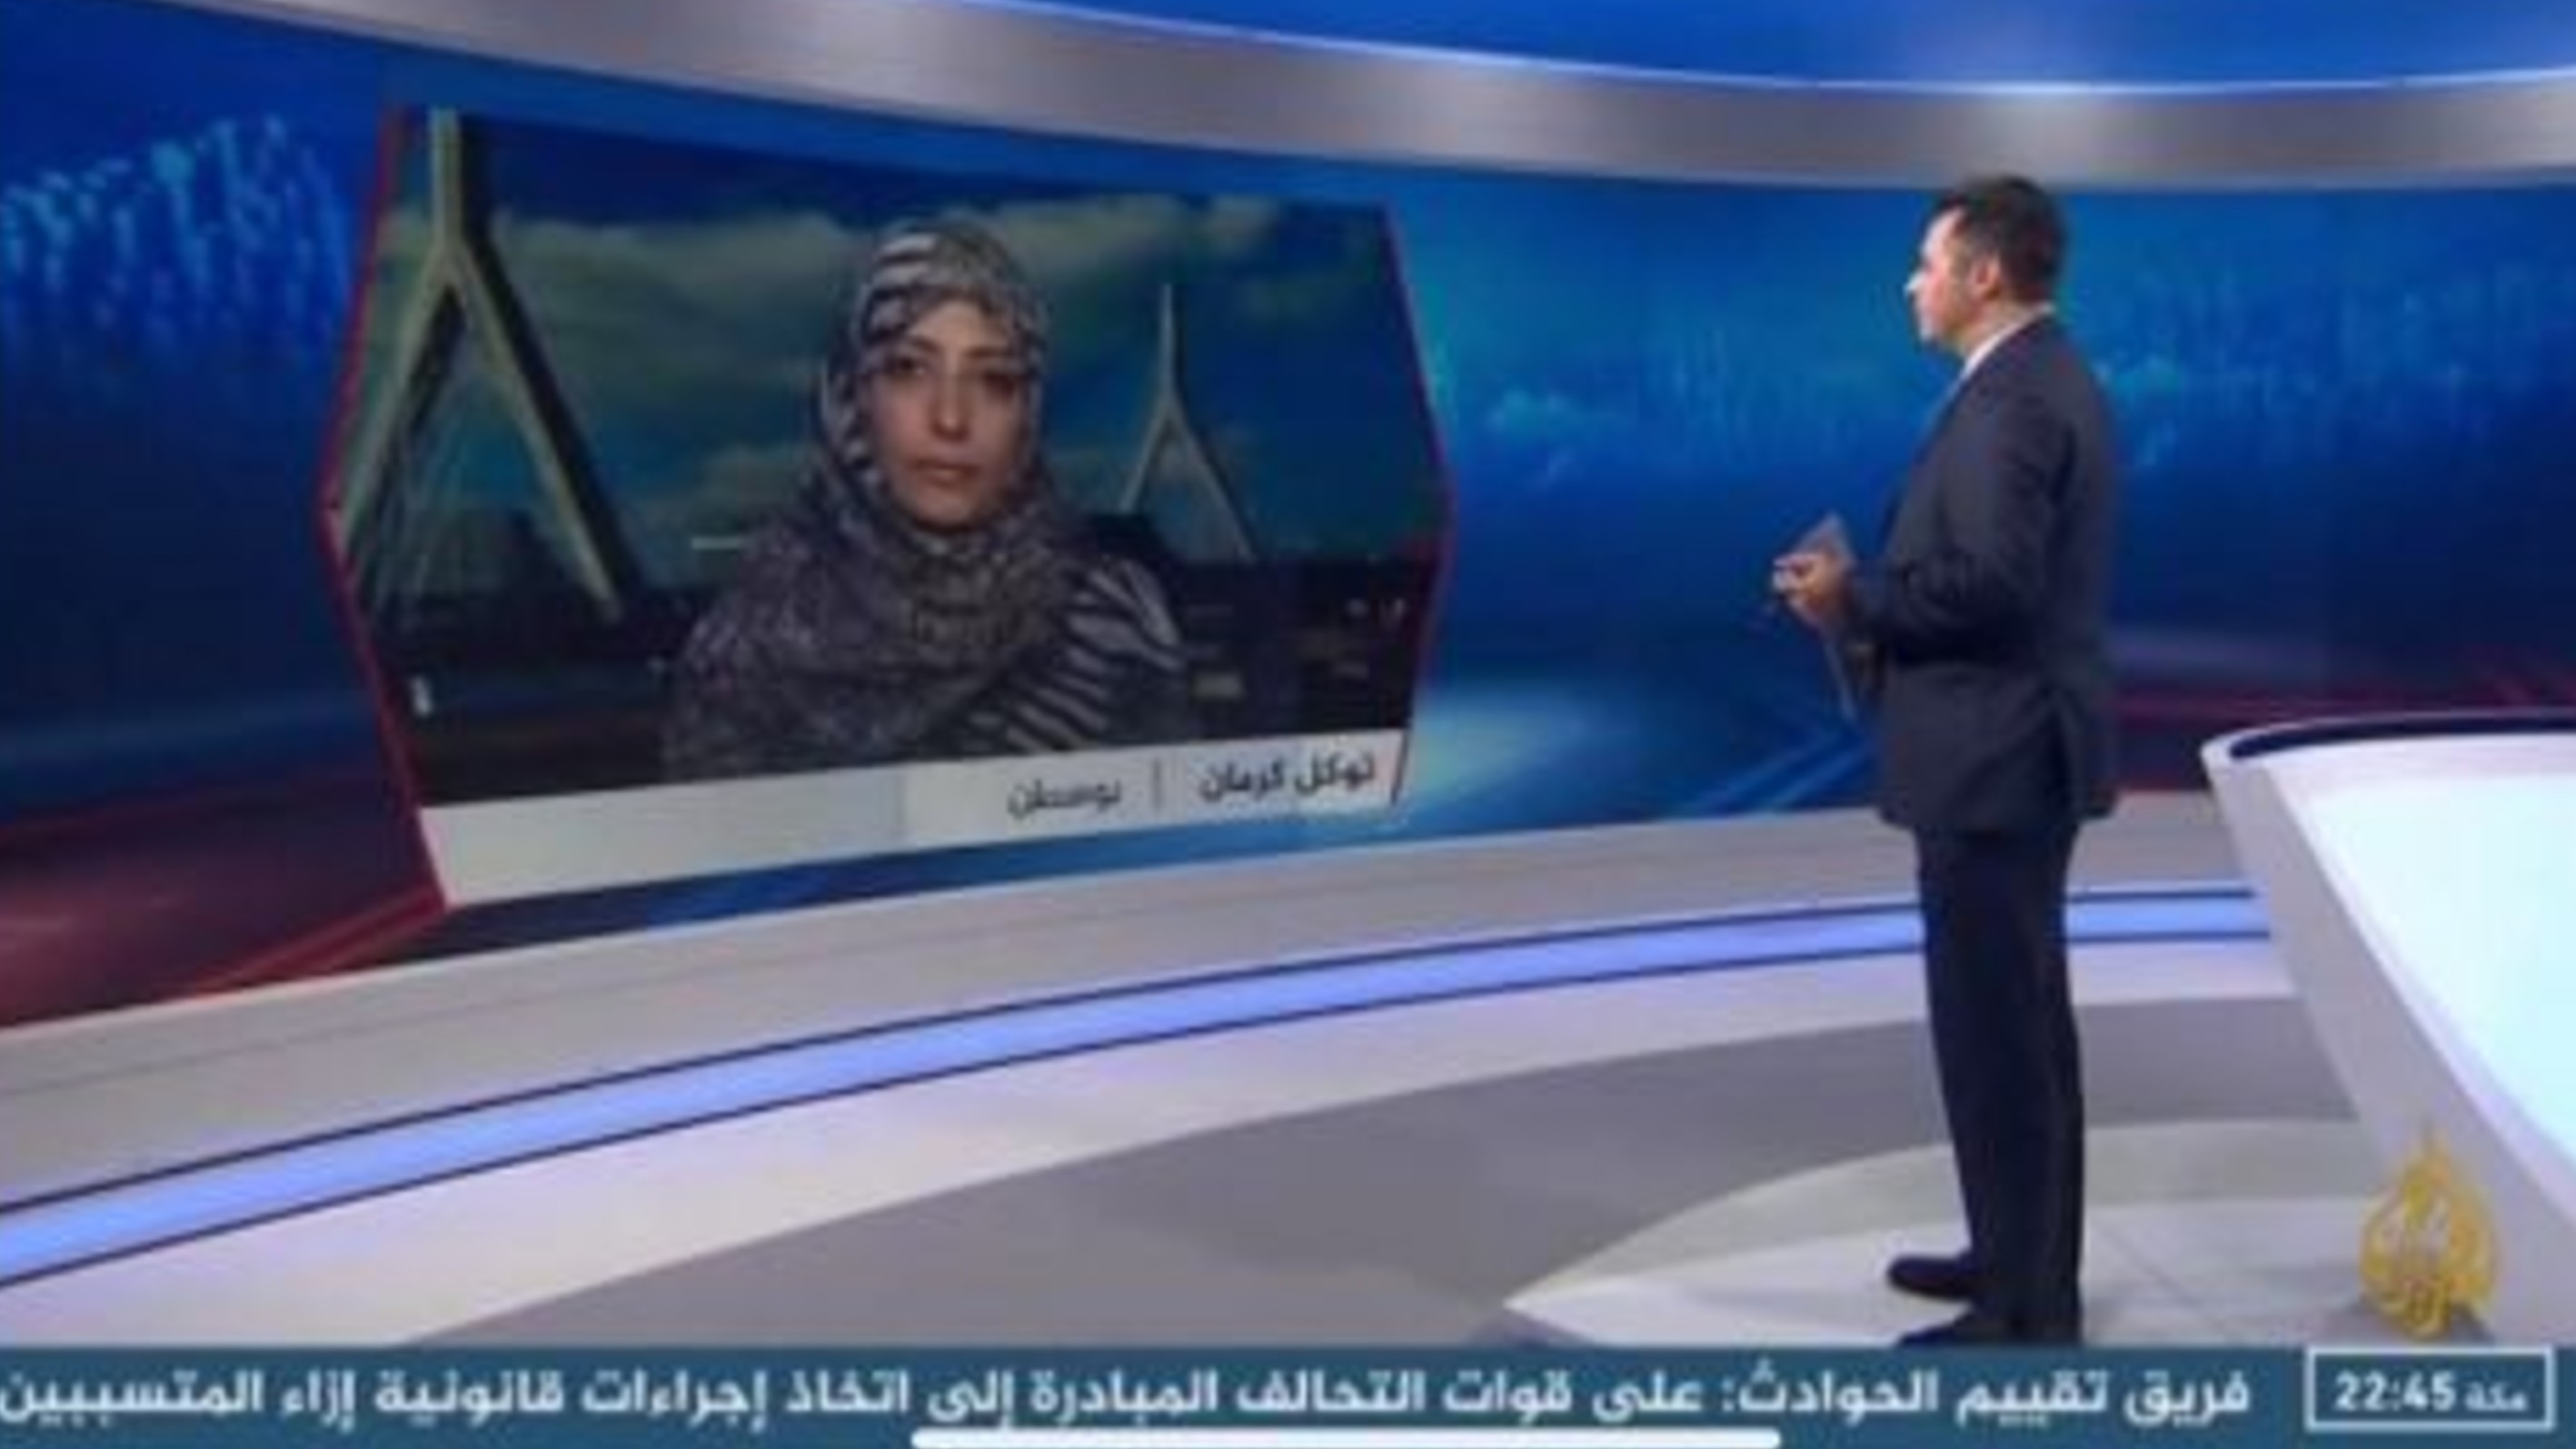 حوار الناشطة الحائزة على جائزة نوبل للسلام توكل كرمان مع قناة الجزيرة حول تقرير فريق الخبراء المعني برصد انتهاكات حقوق الانسان في اليمن